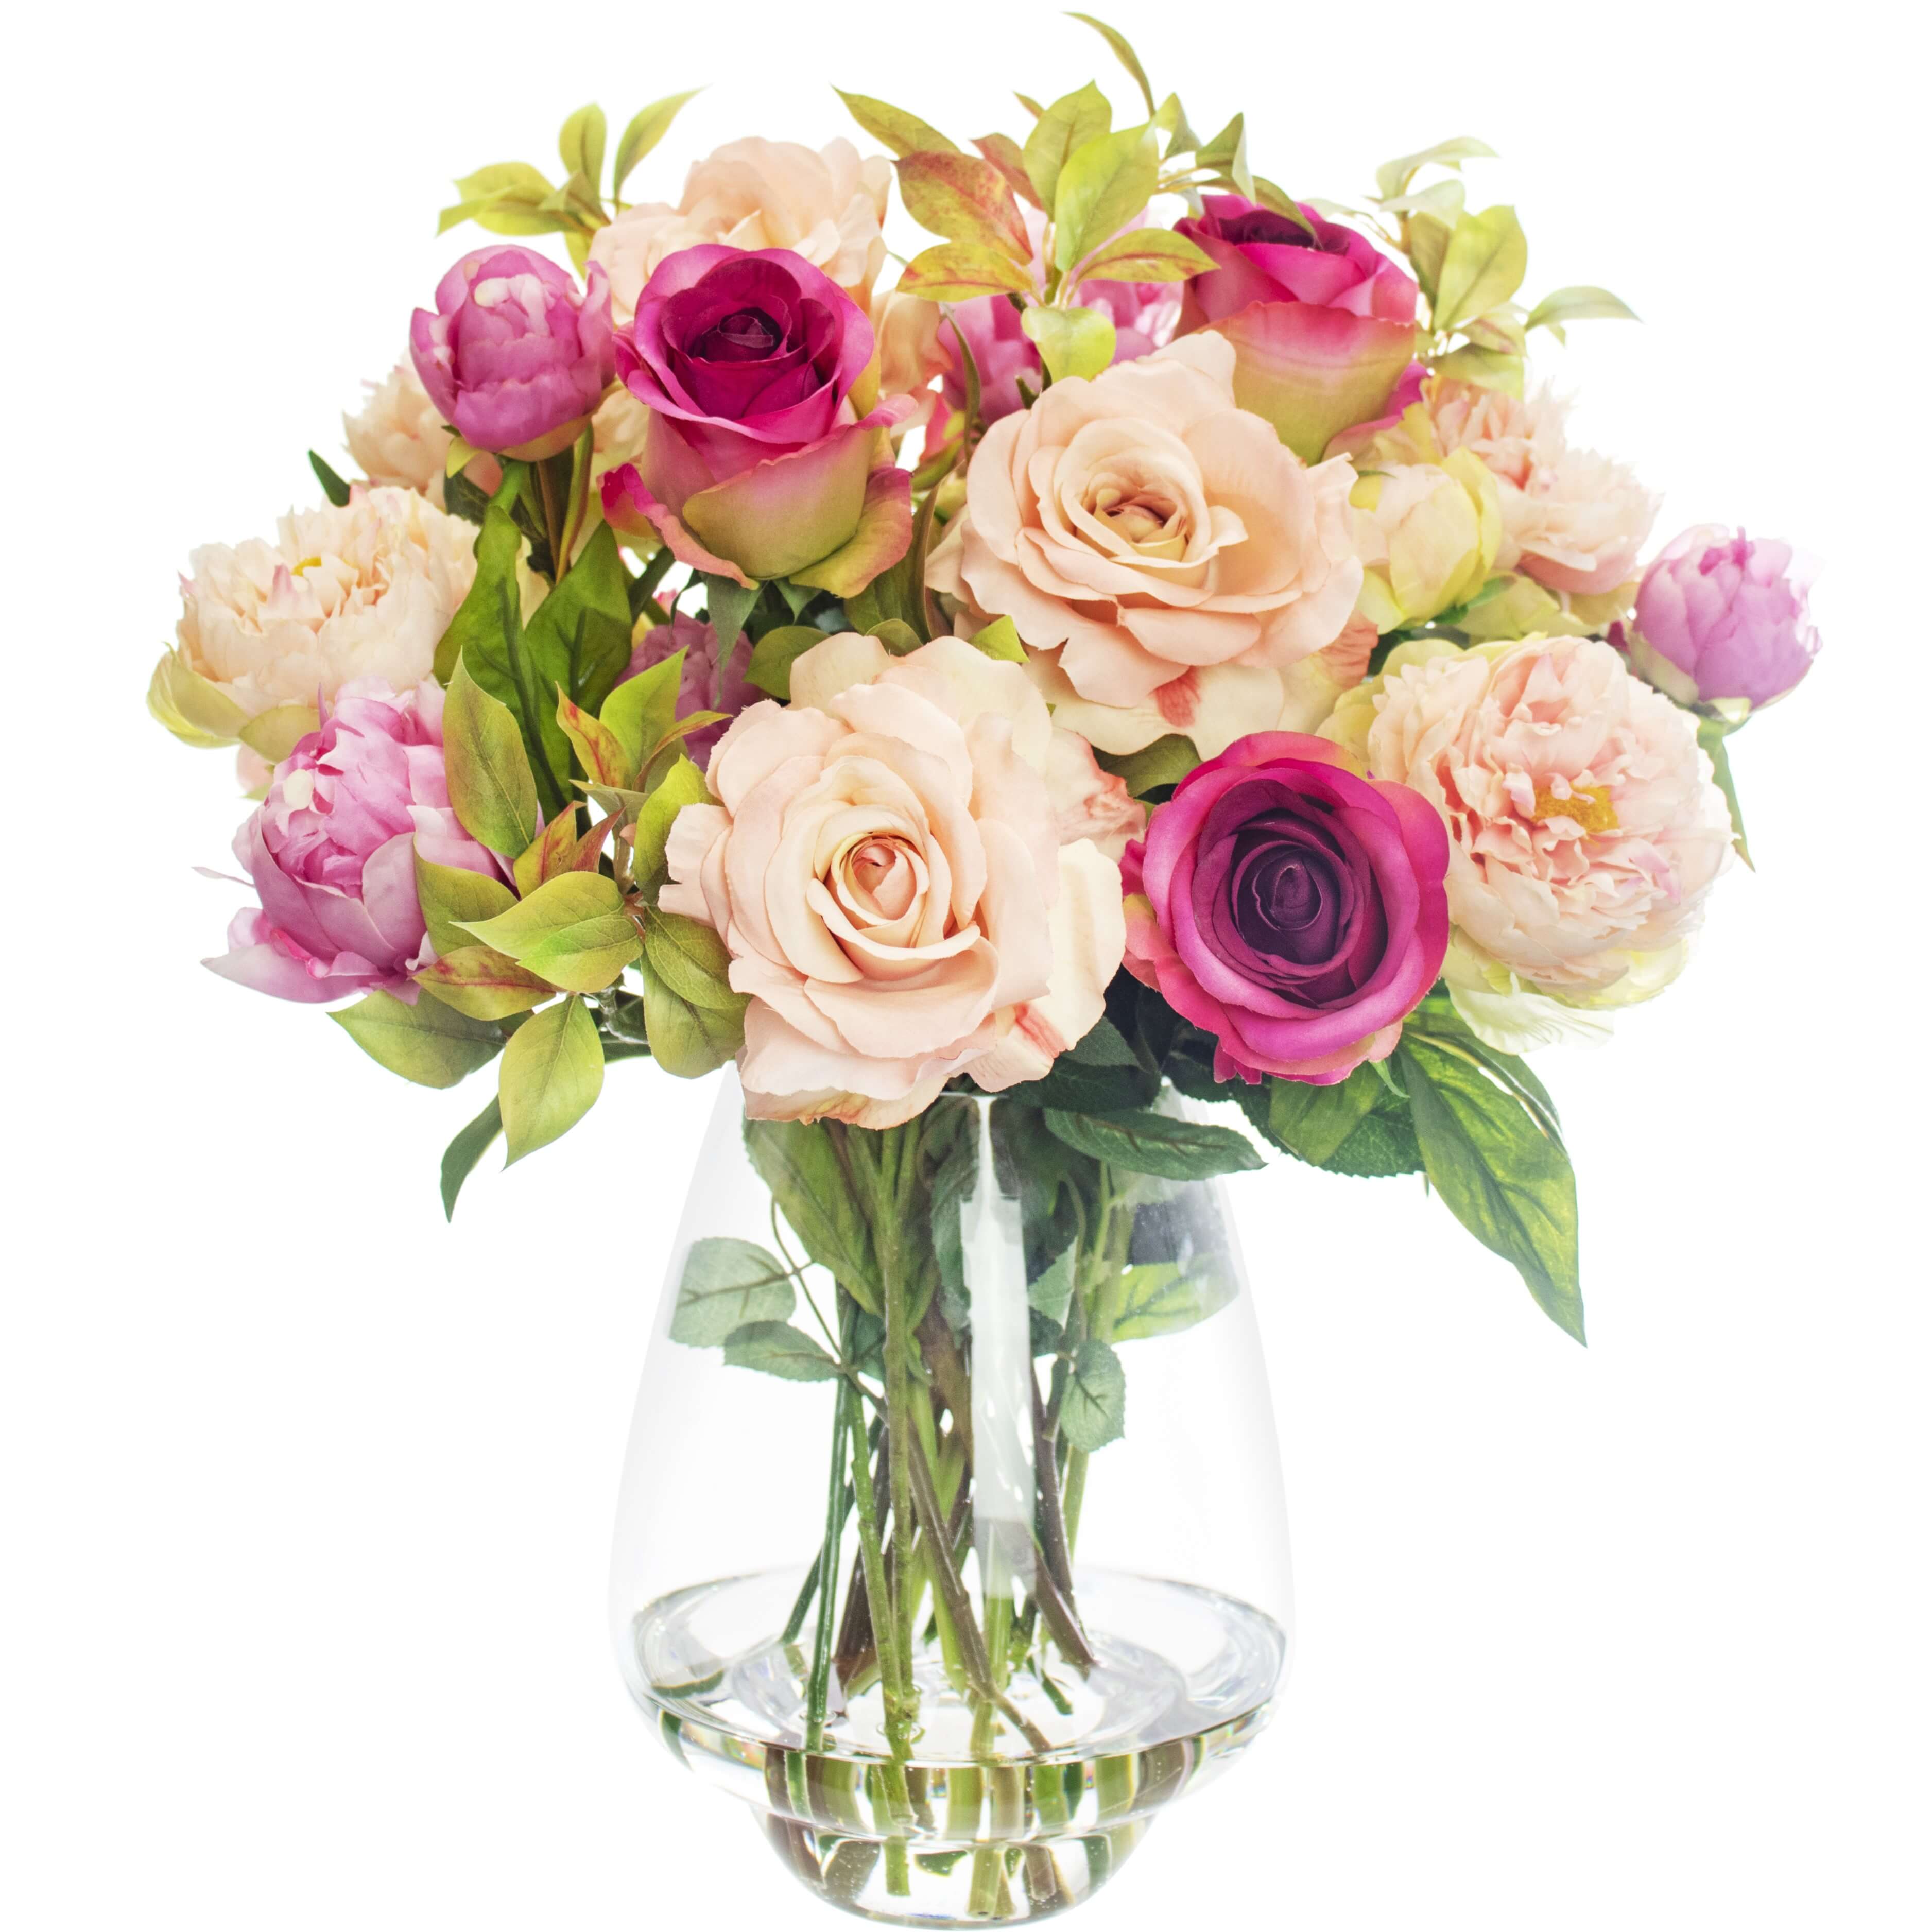 Buy Artificial Floral and Faux Flower Arrangements Online